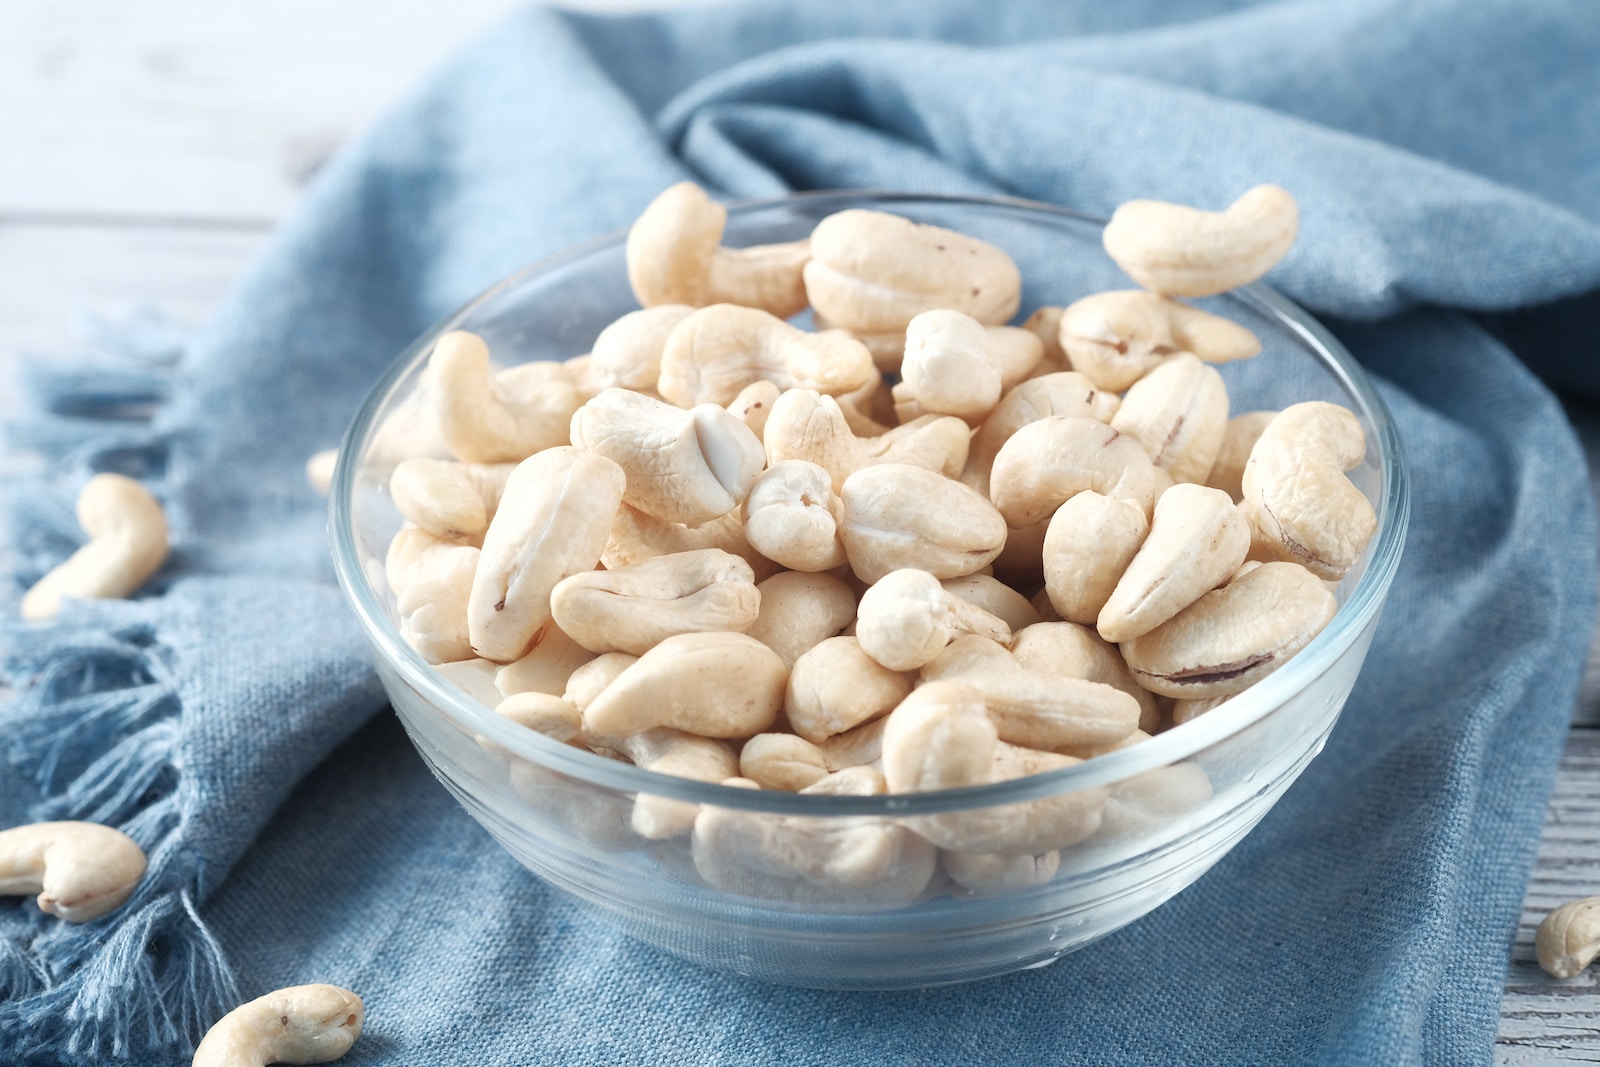 קשיו יתרונות – 5 סיבות מעולות להוסיף אגוזי קשיו לתפריט שלכם